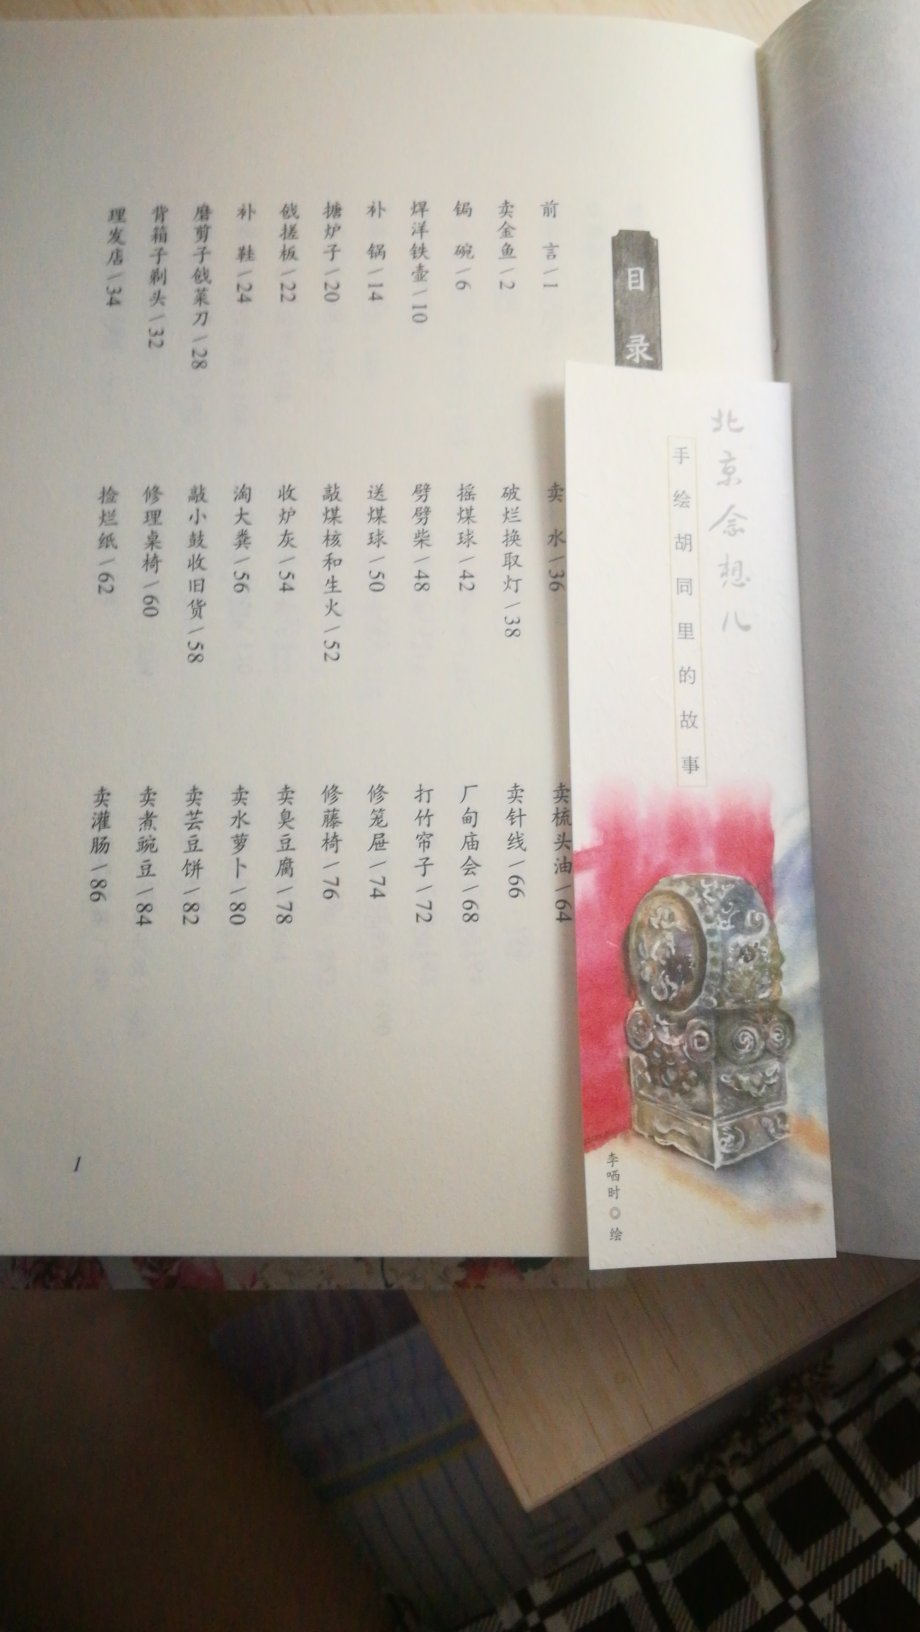 朋友推荐买的，这是一本记录当年北京老城城市生活的缩影，是儿时的记忆，是北京老城的念想儿，是非常值得购买的，可以给现在的北京孩子看看，更可以收藏，得空儿慢慢重温那种记忆！